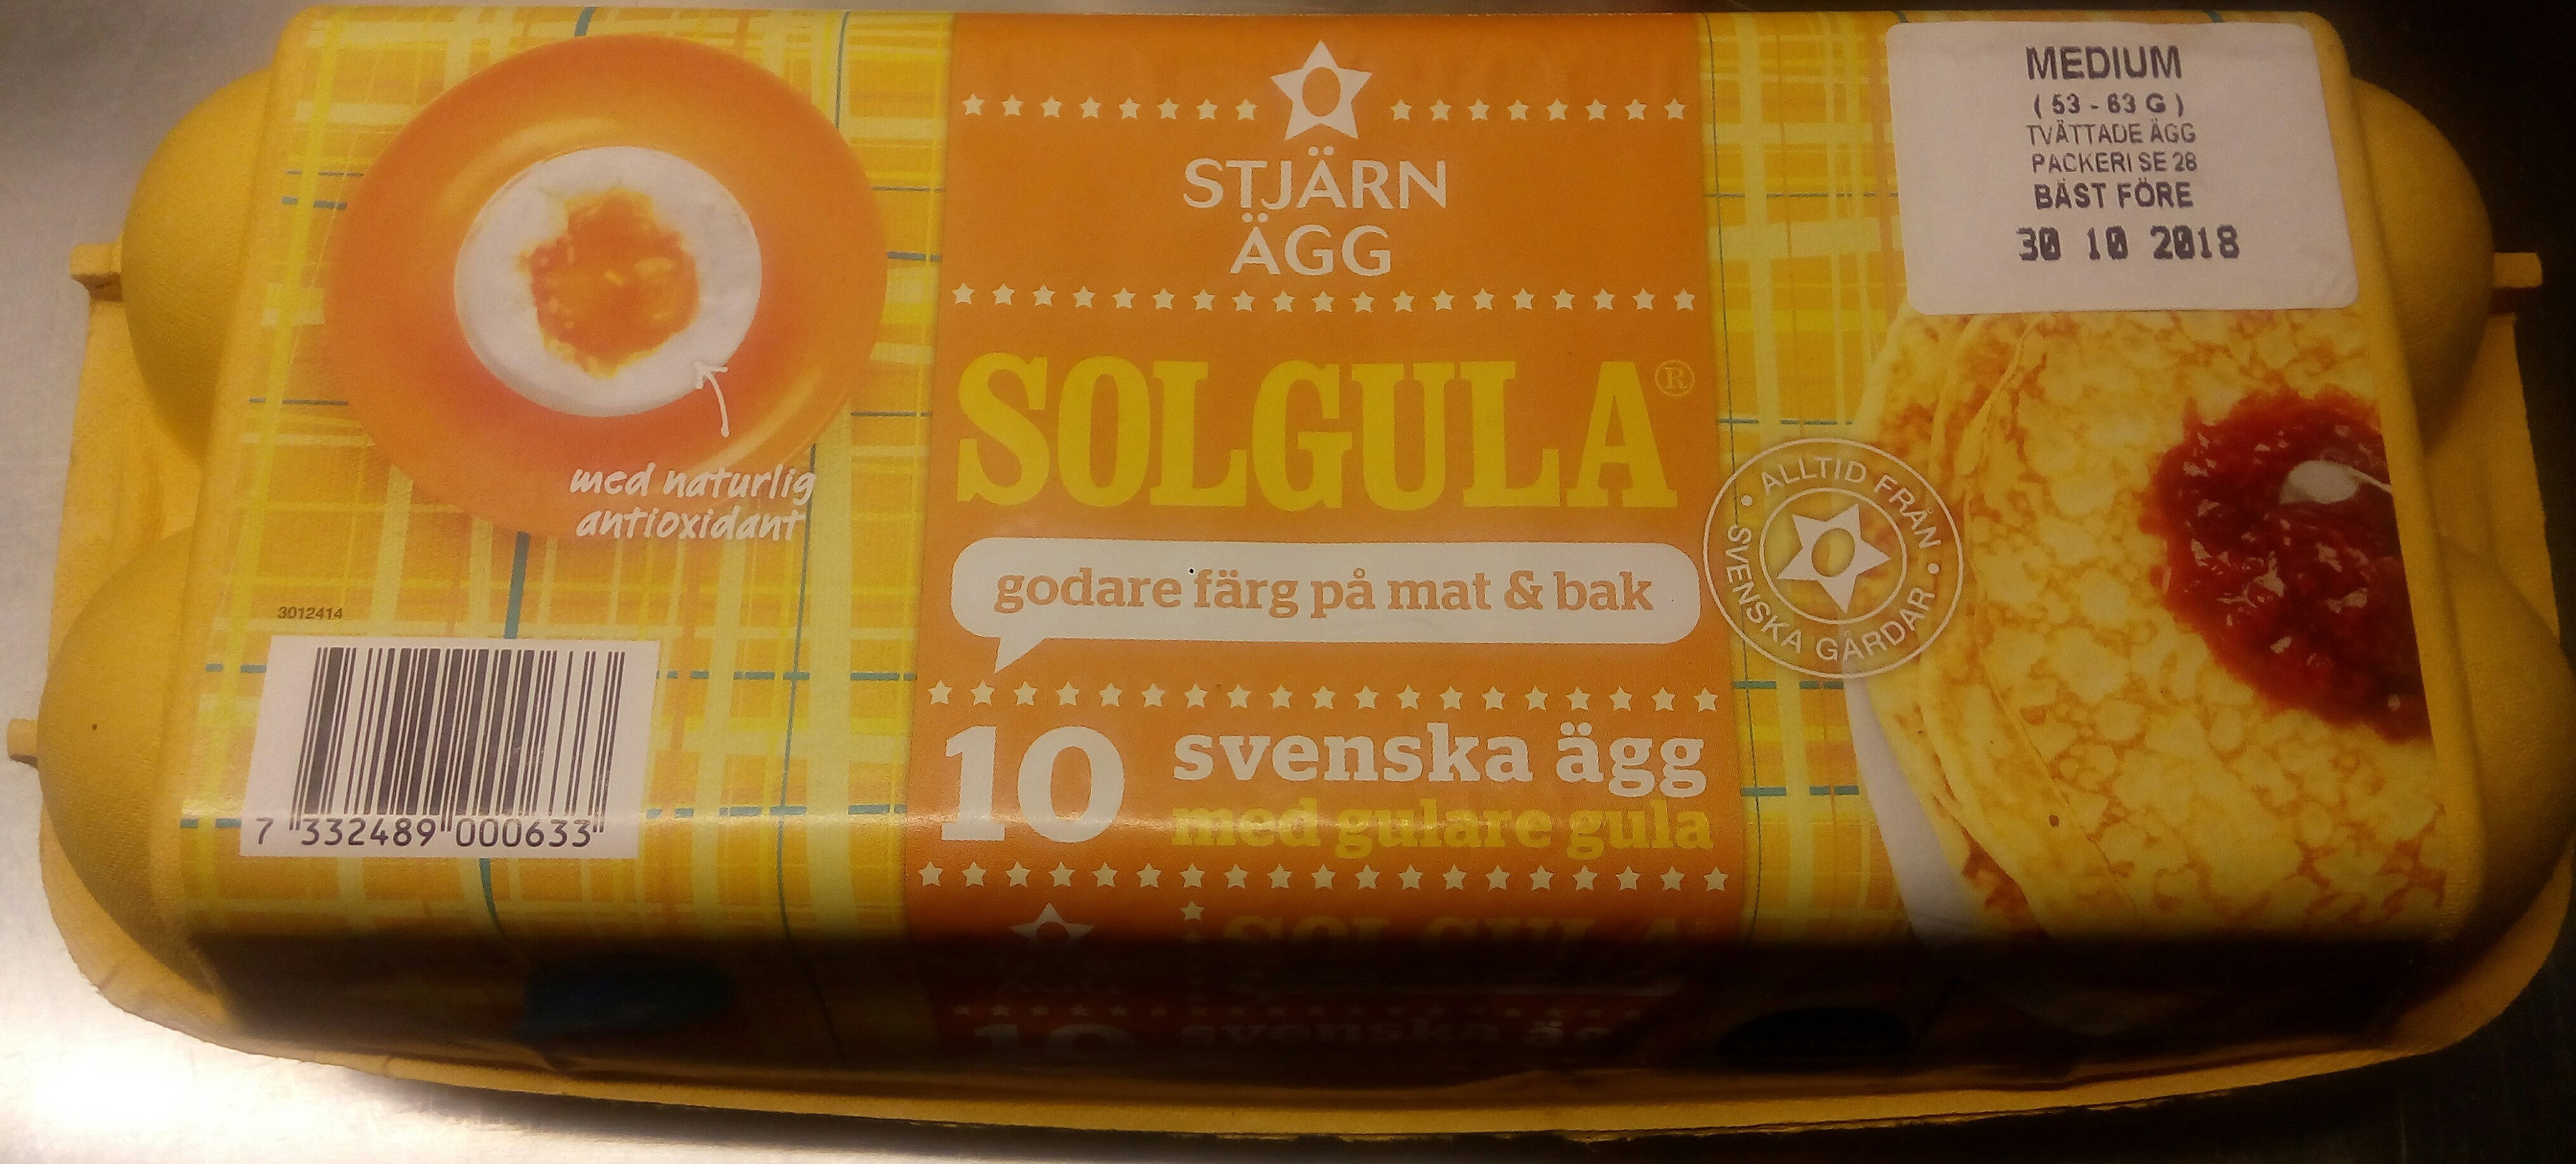 Stjärnägg Solgula 10 svenska ägg med gulare gula - Produkt